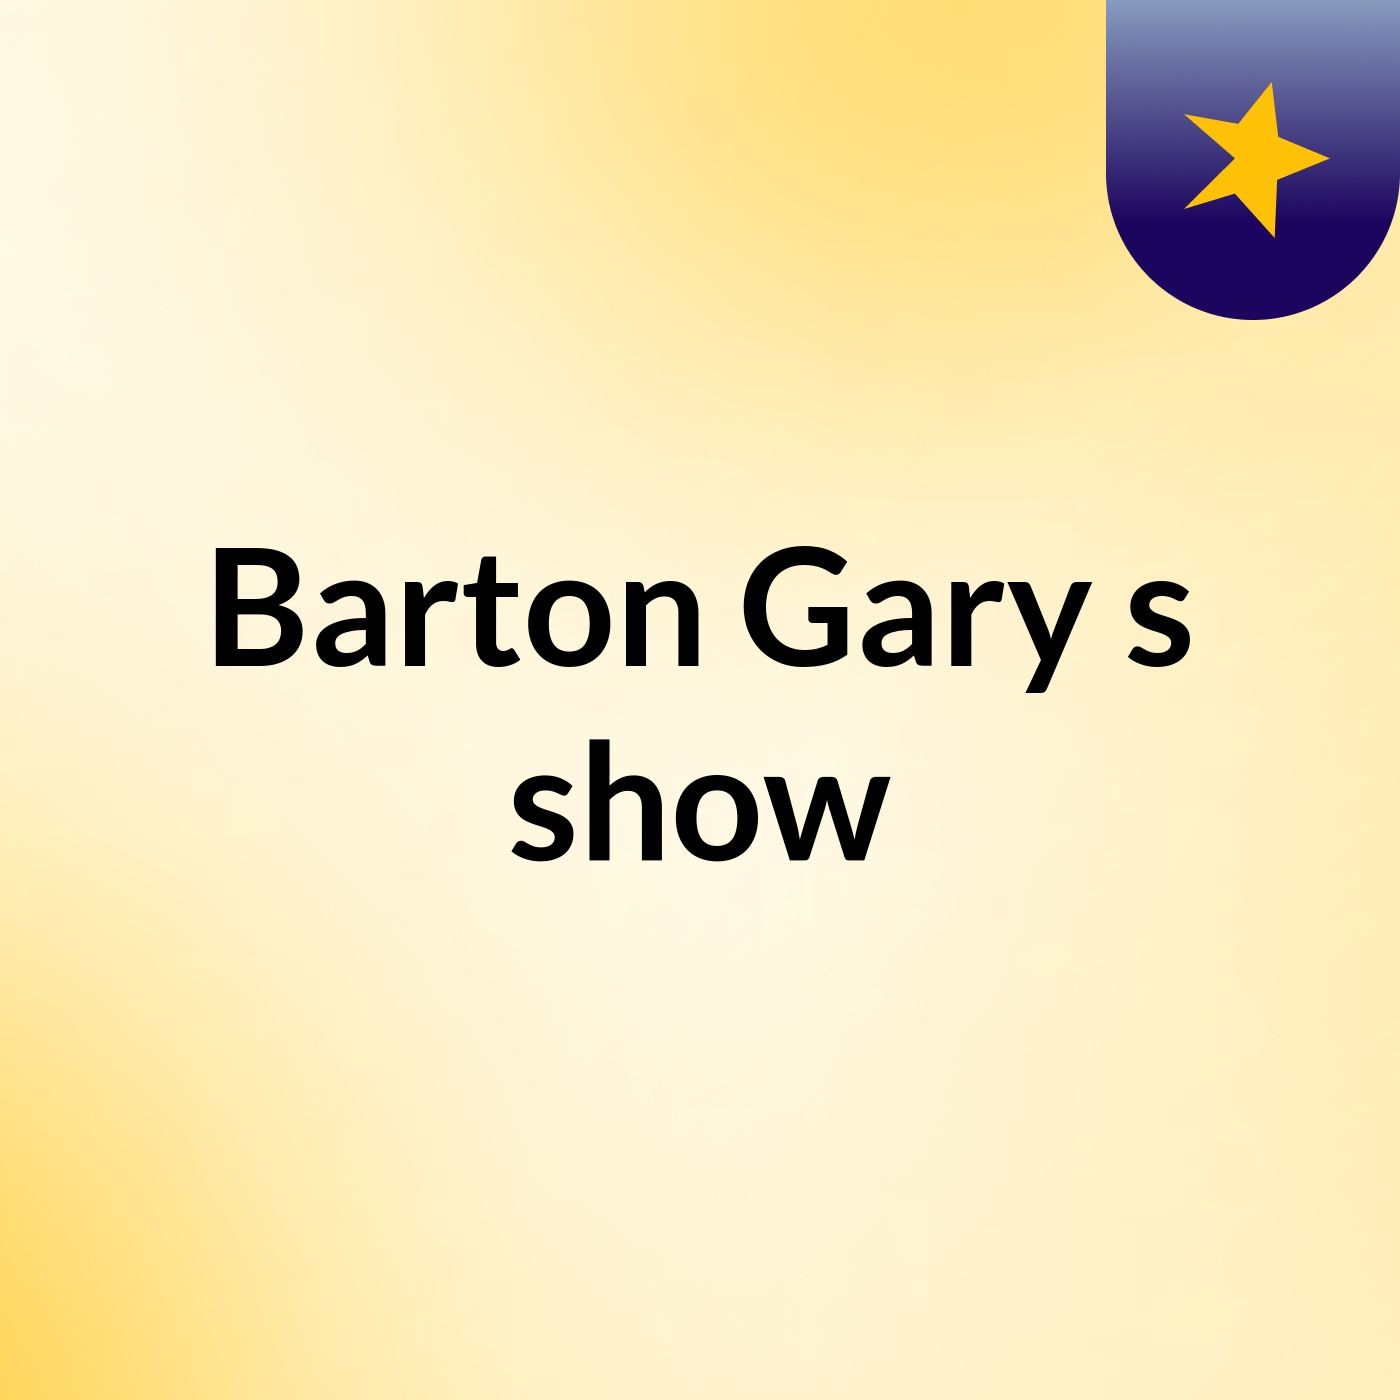 Episode 3 - Barton Gary's show